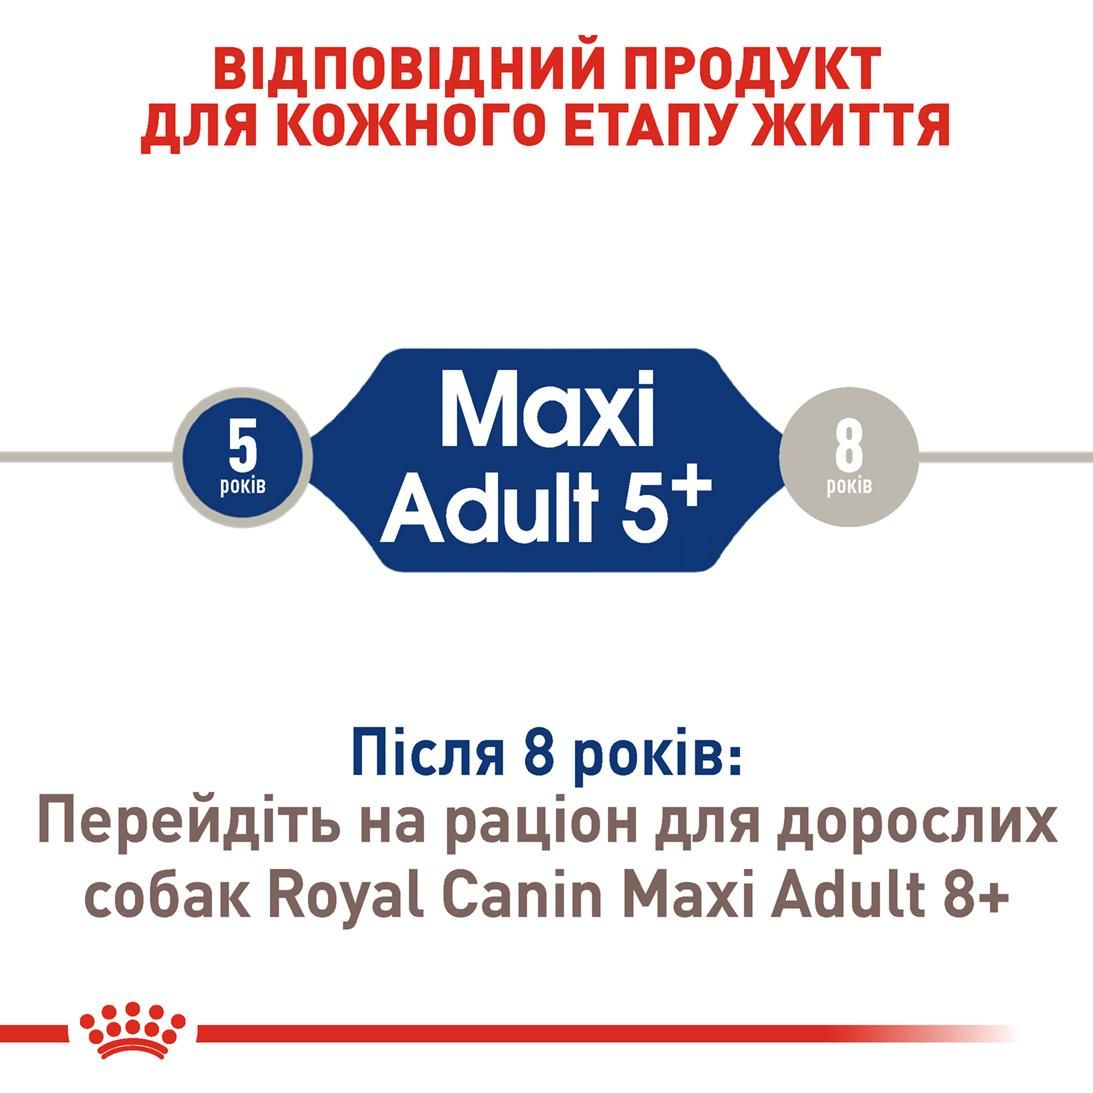 Maxi Adult 5+